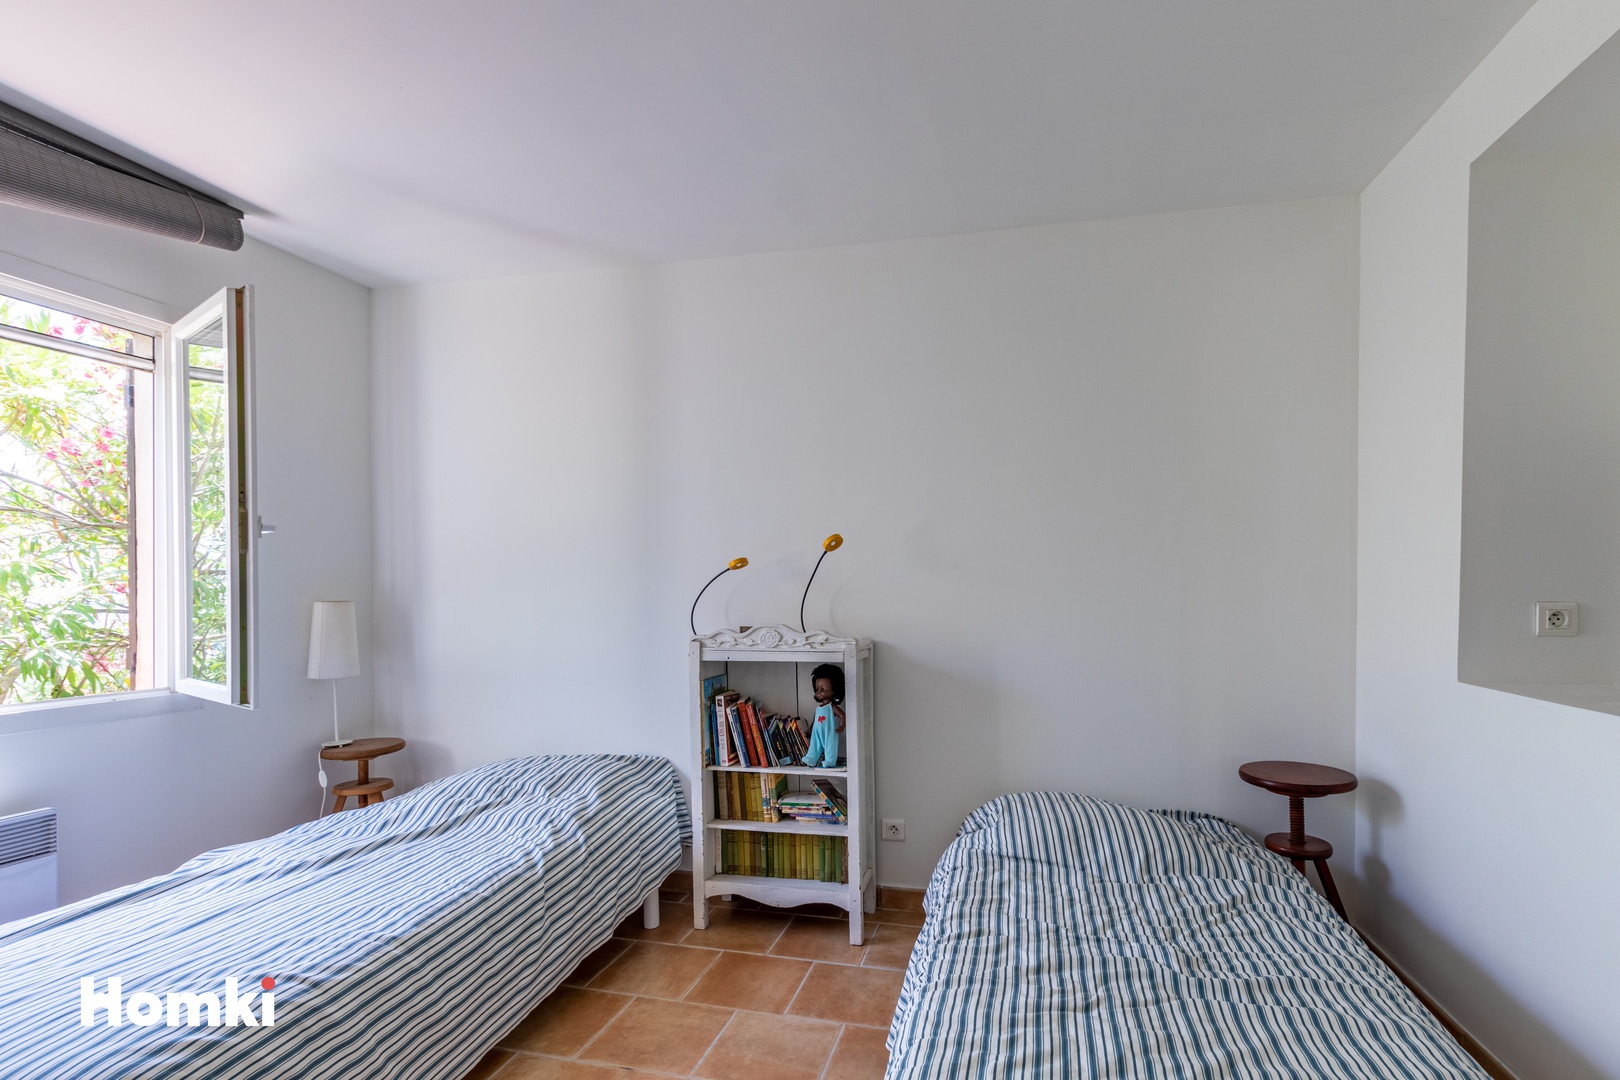 Homki - Vente Maison/villa  de 150.0 m² à Toulon 83200